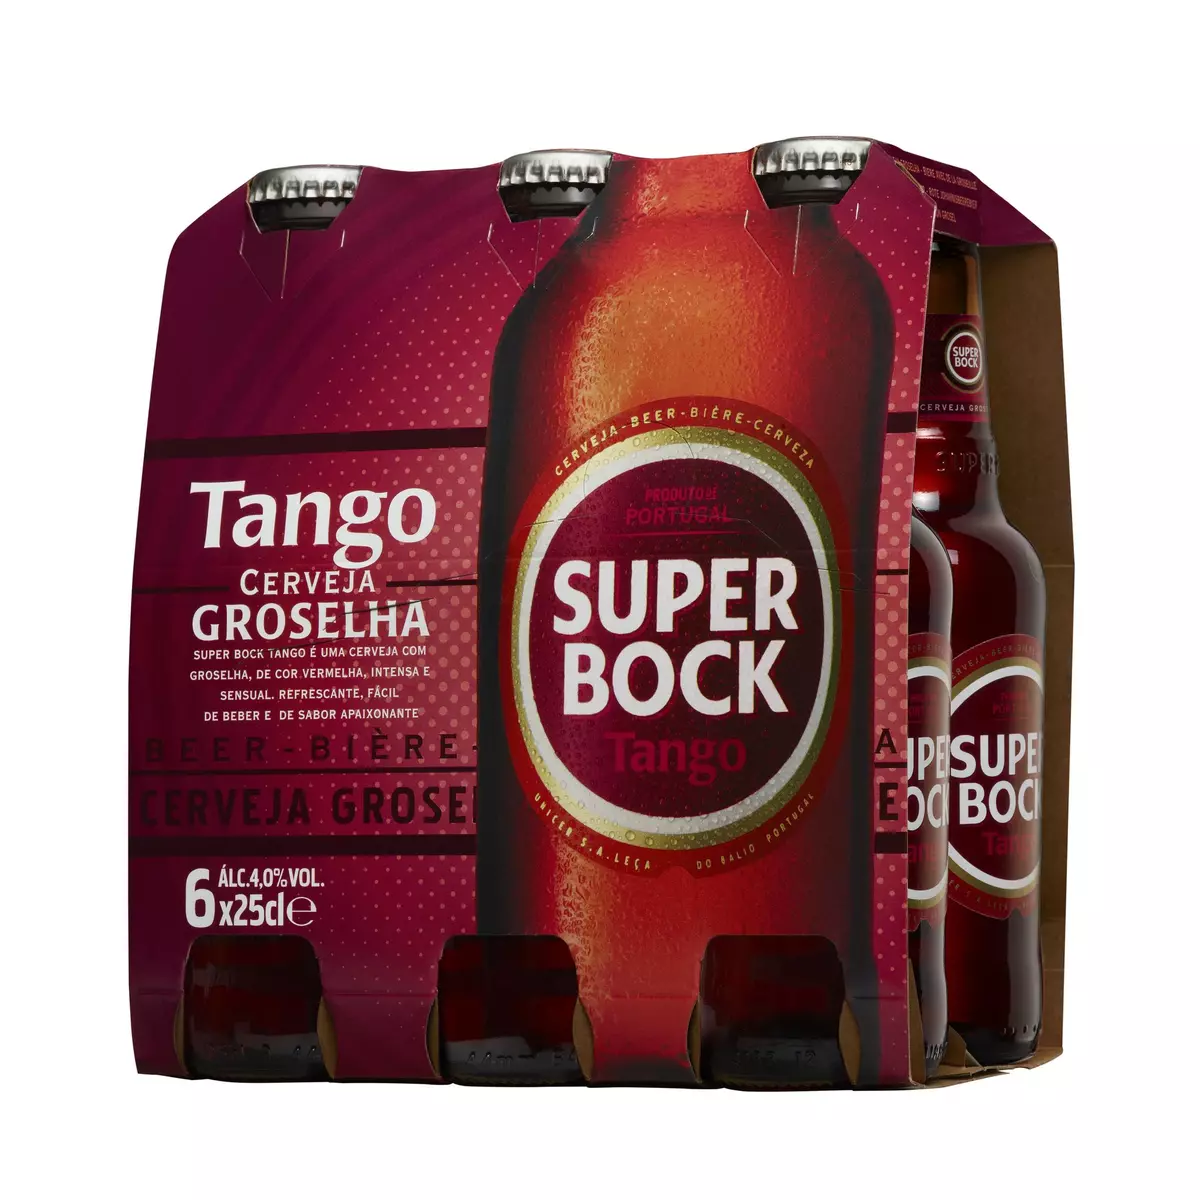 SUPER BOCK Bière portugaise Tango aromatisée fruits rouges 6,4% bouteilles 6X25cl